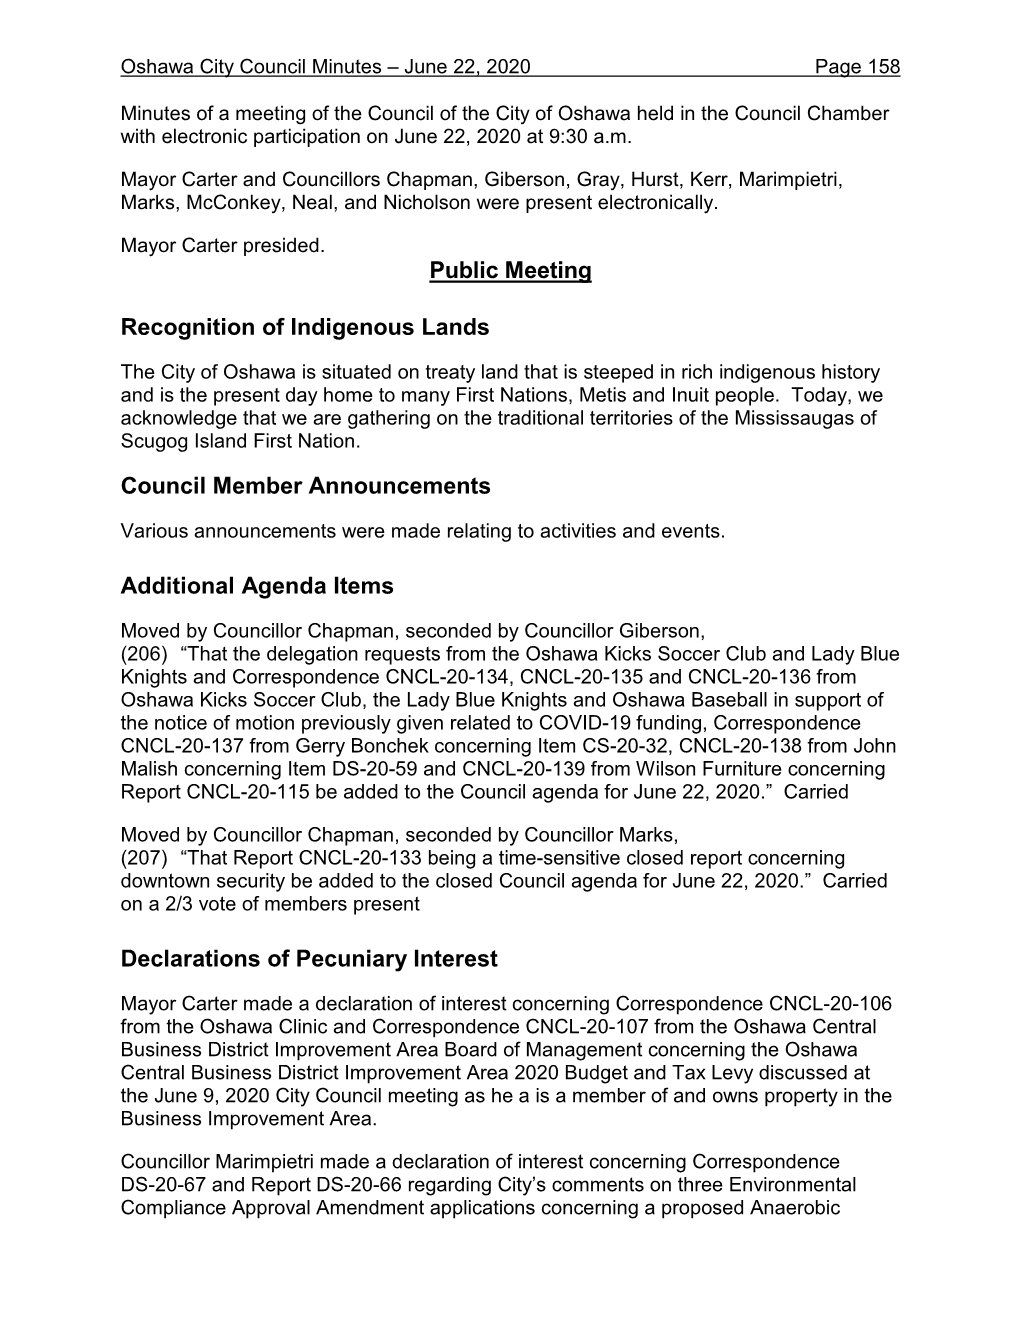 City Council Minutes – June 22, 2020 Page 158